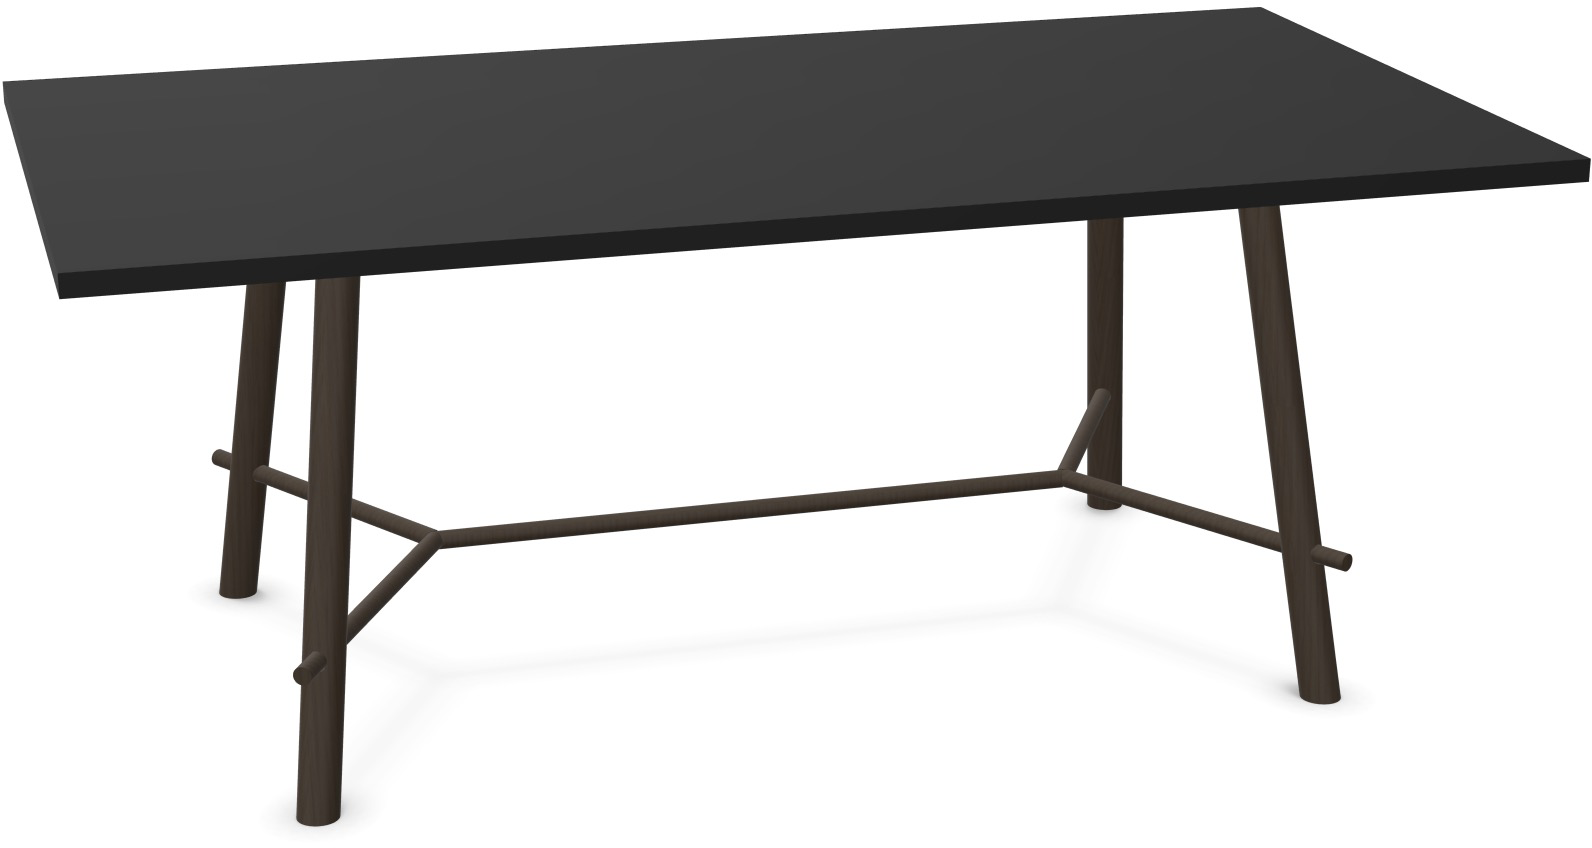 Record Living Maxi Tisch in Schwarz / Eiche schwarz präsentiert im Onlineshop von KAQTU Design AG. Esstisch ist von Infiniti Design